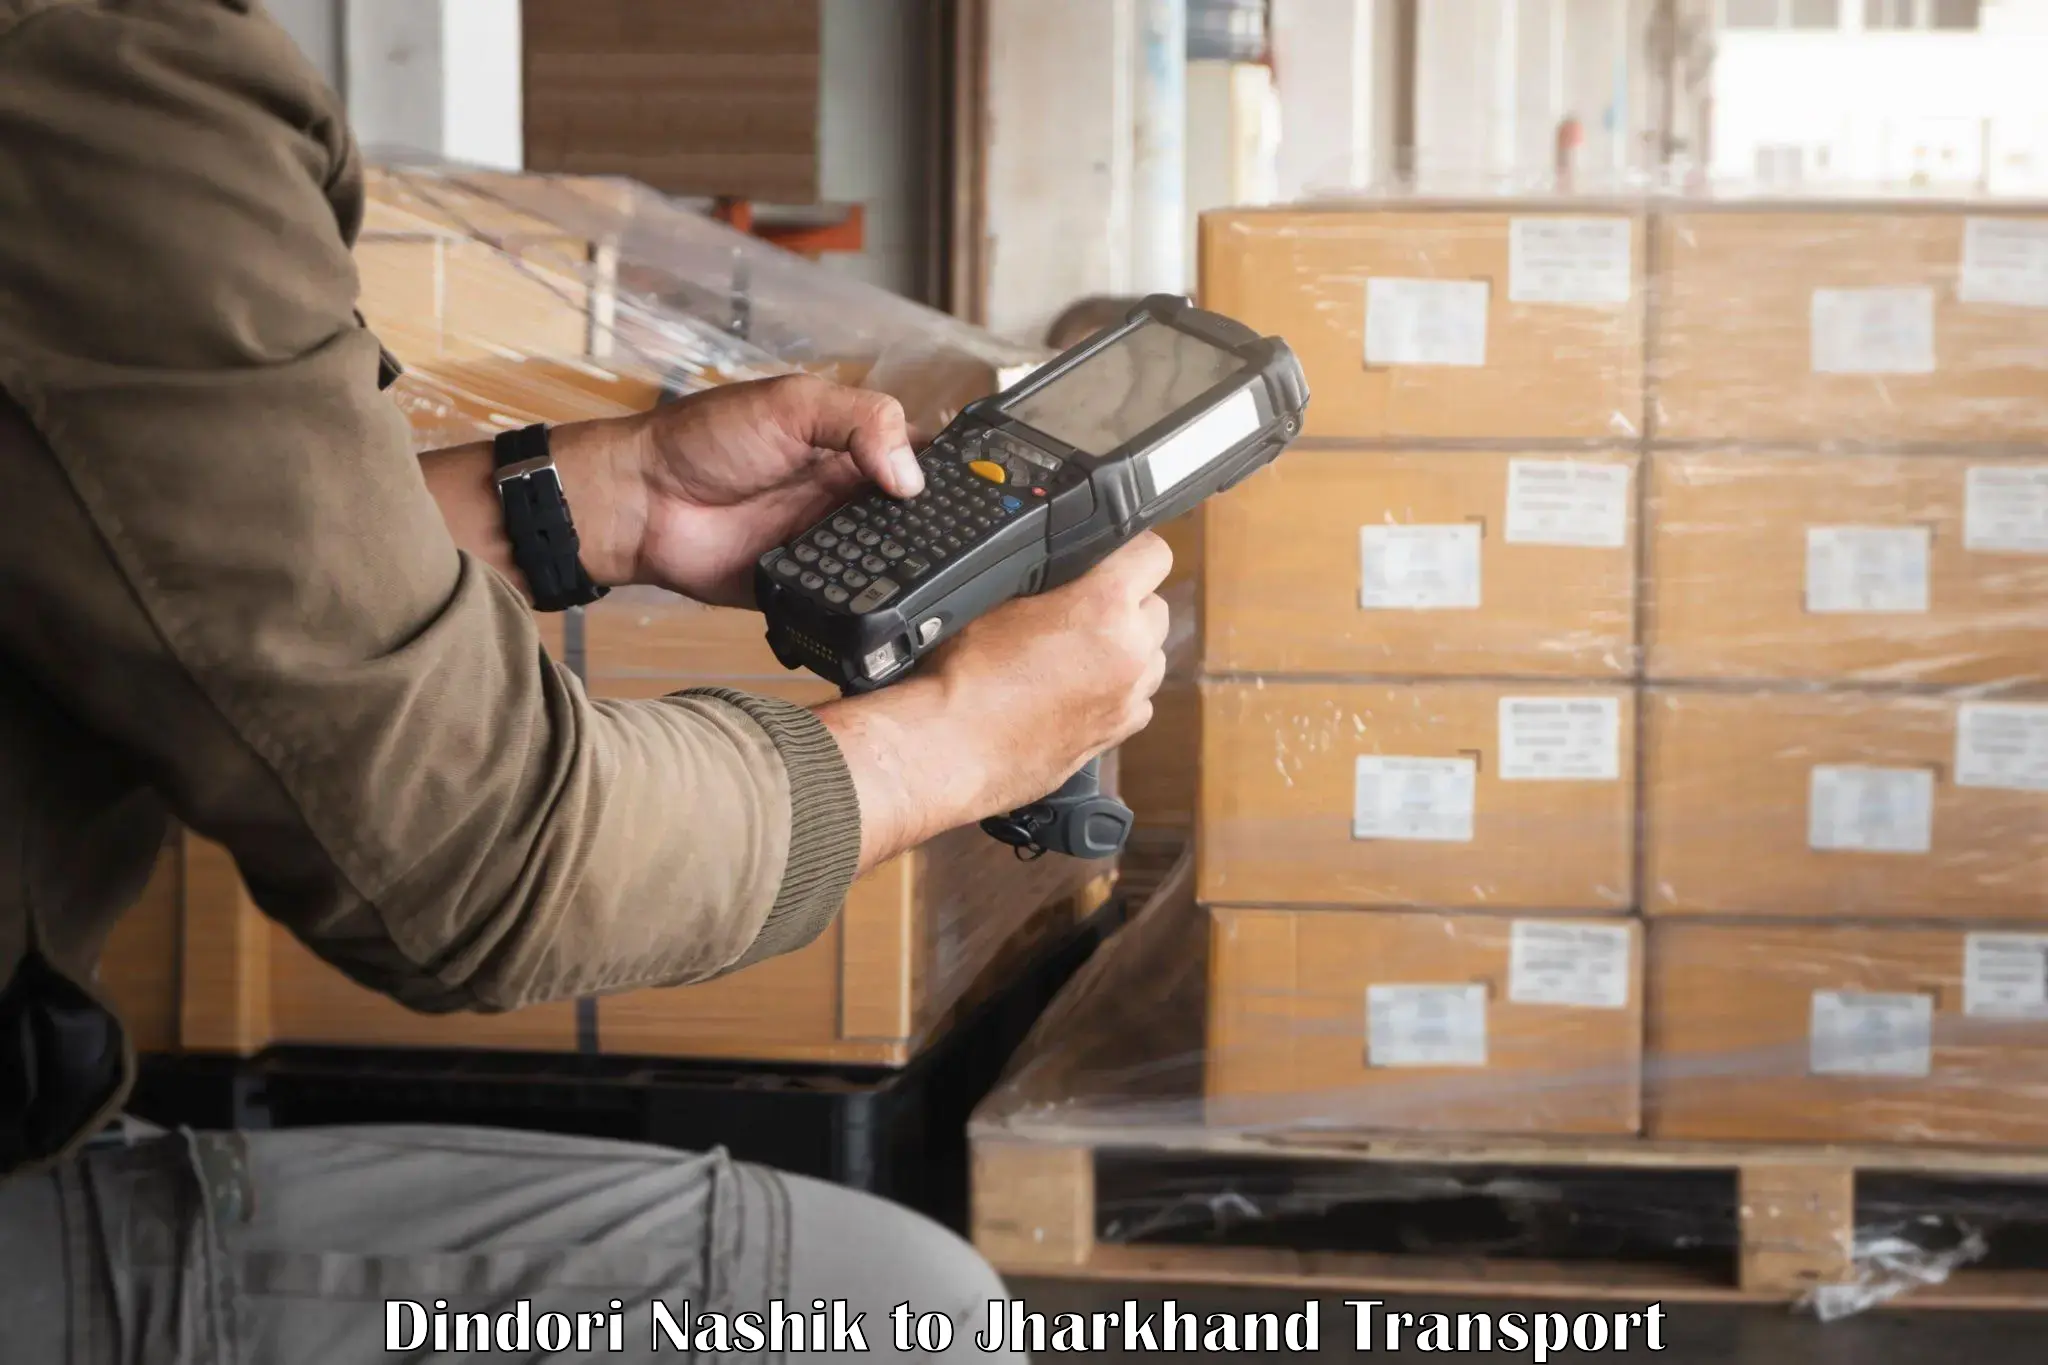 Part load transport service in India Dindori Nashik to Bokaro